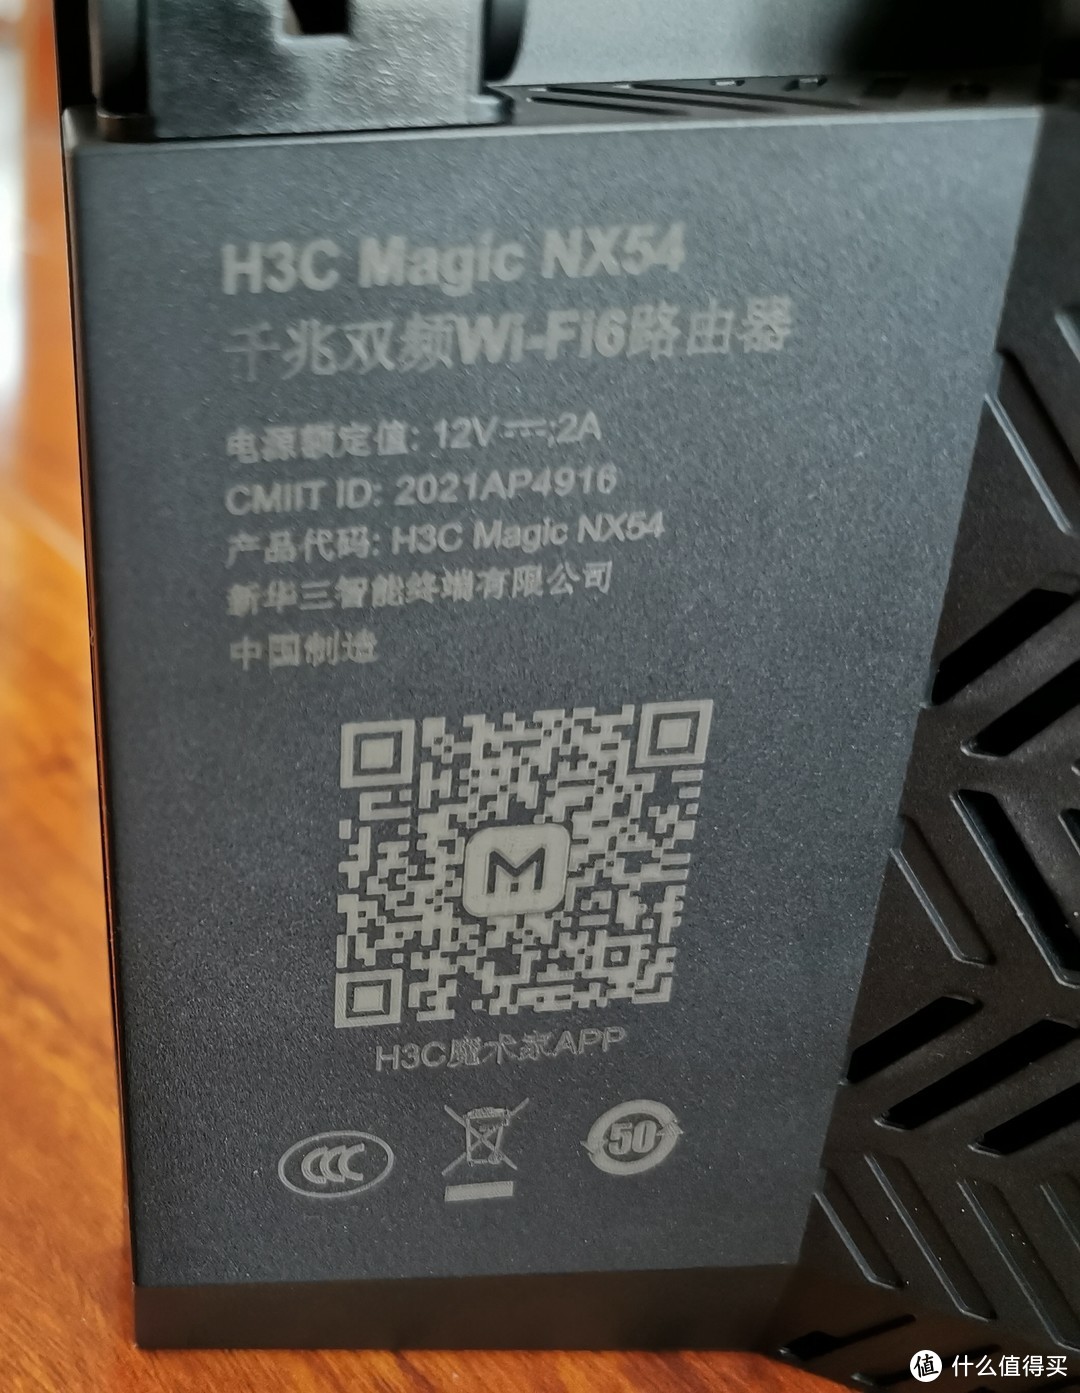 企业级血统的家用路由：H3C Magic NX54 WIFI6路由器使用评测